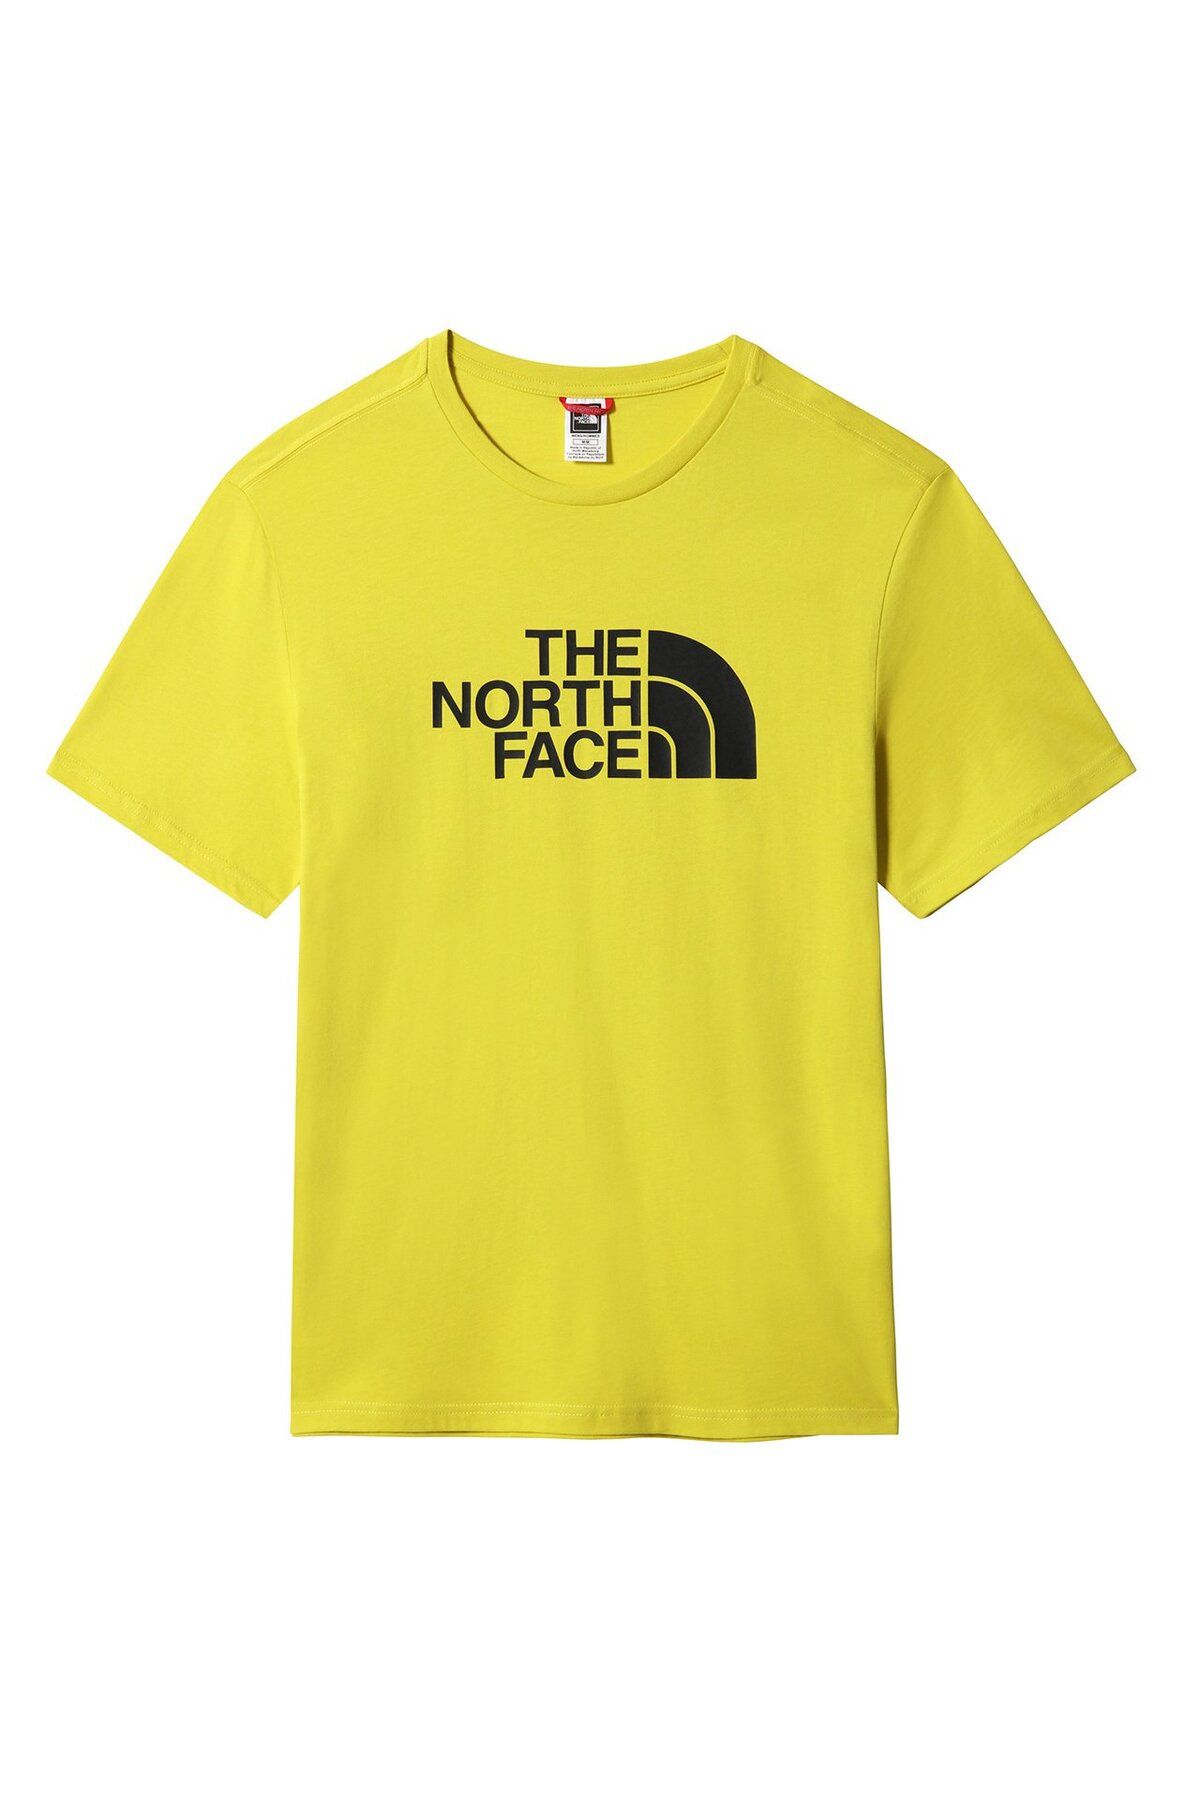 The North Face Erkek S/s Easy Tee Tişört - Eu Sarı